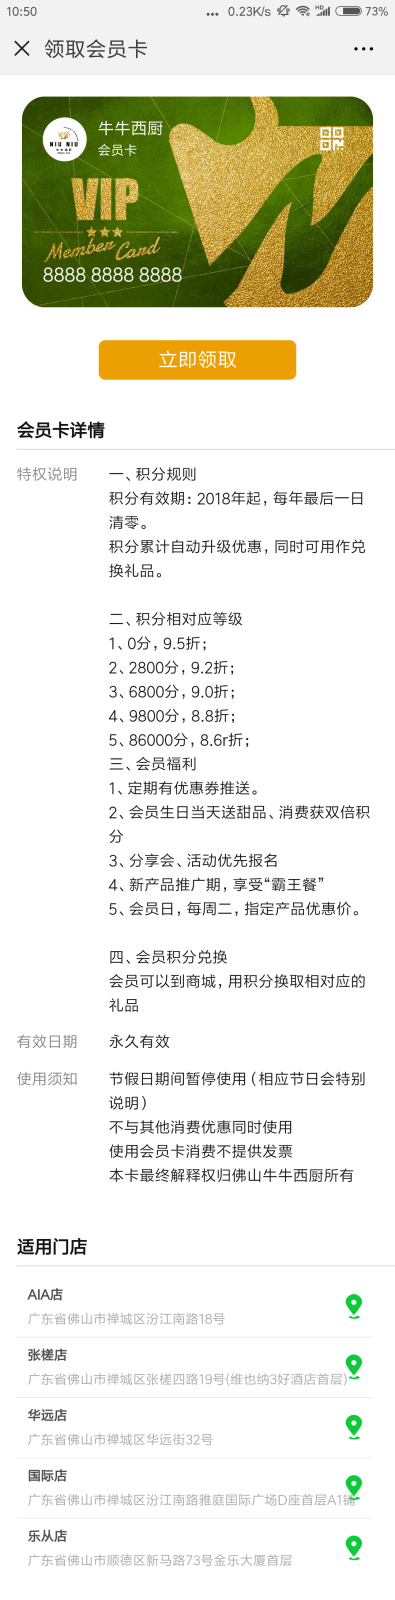 Screenshot_2018-08-28-10-50-47-104_com.tencent.mm.png